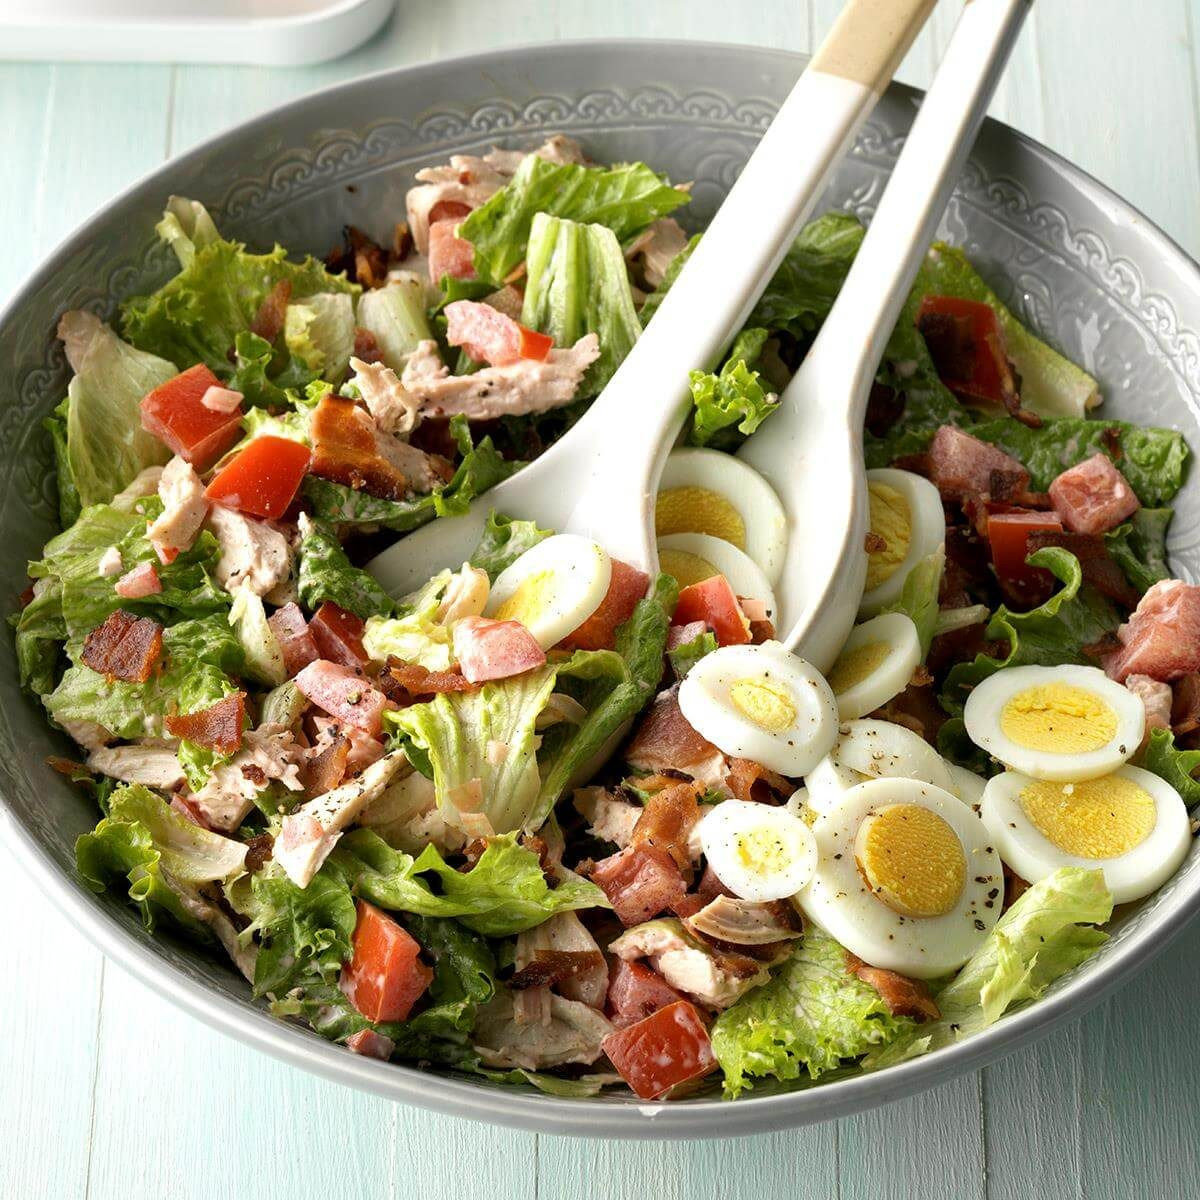 Blt Chicken Salad Elegant Blt Chicken Salad Recipe